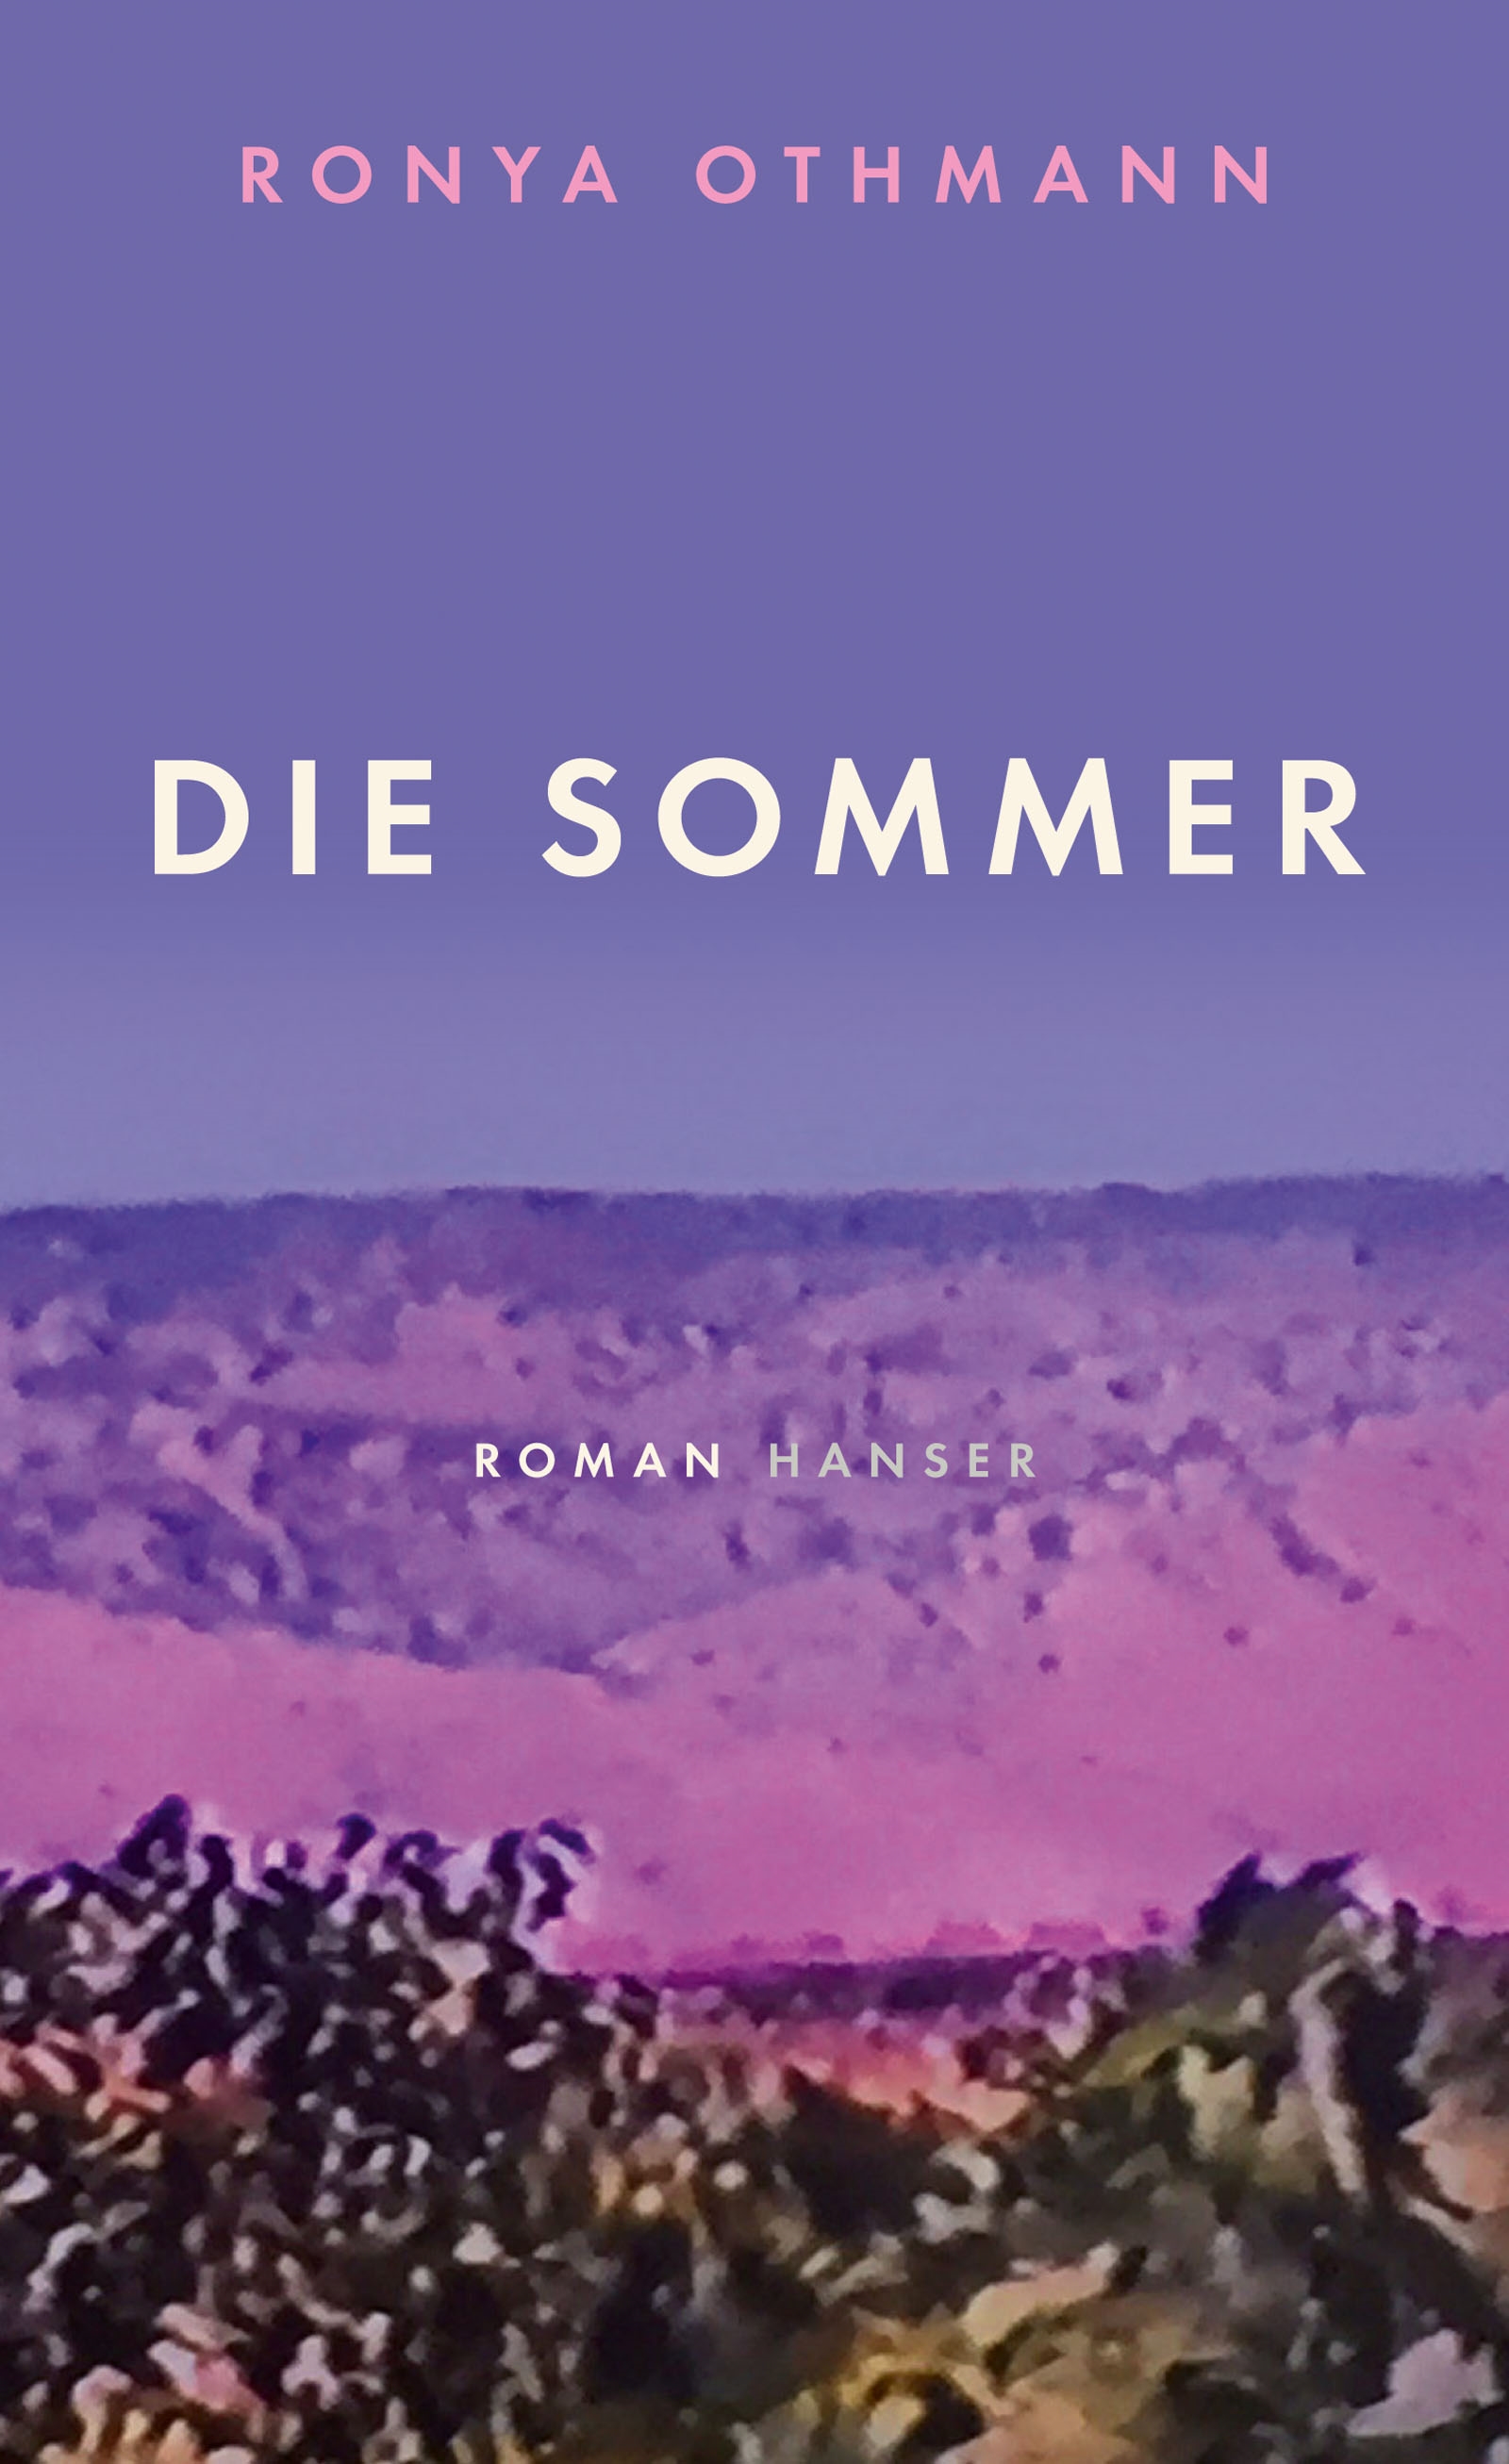 Buchcover Ronya Othmann: “Die Sommer” im Hanser Verlag